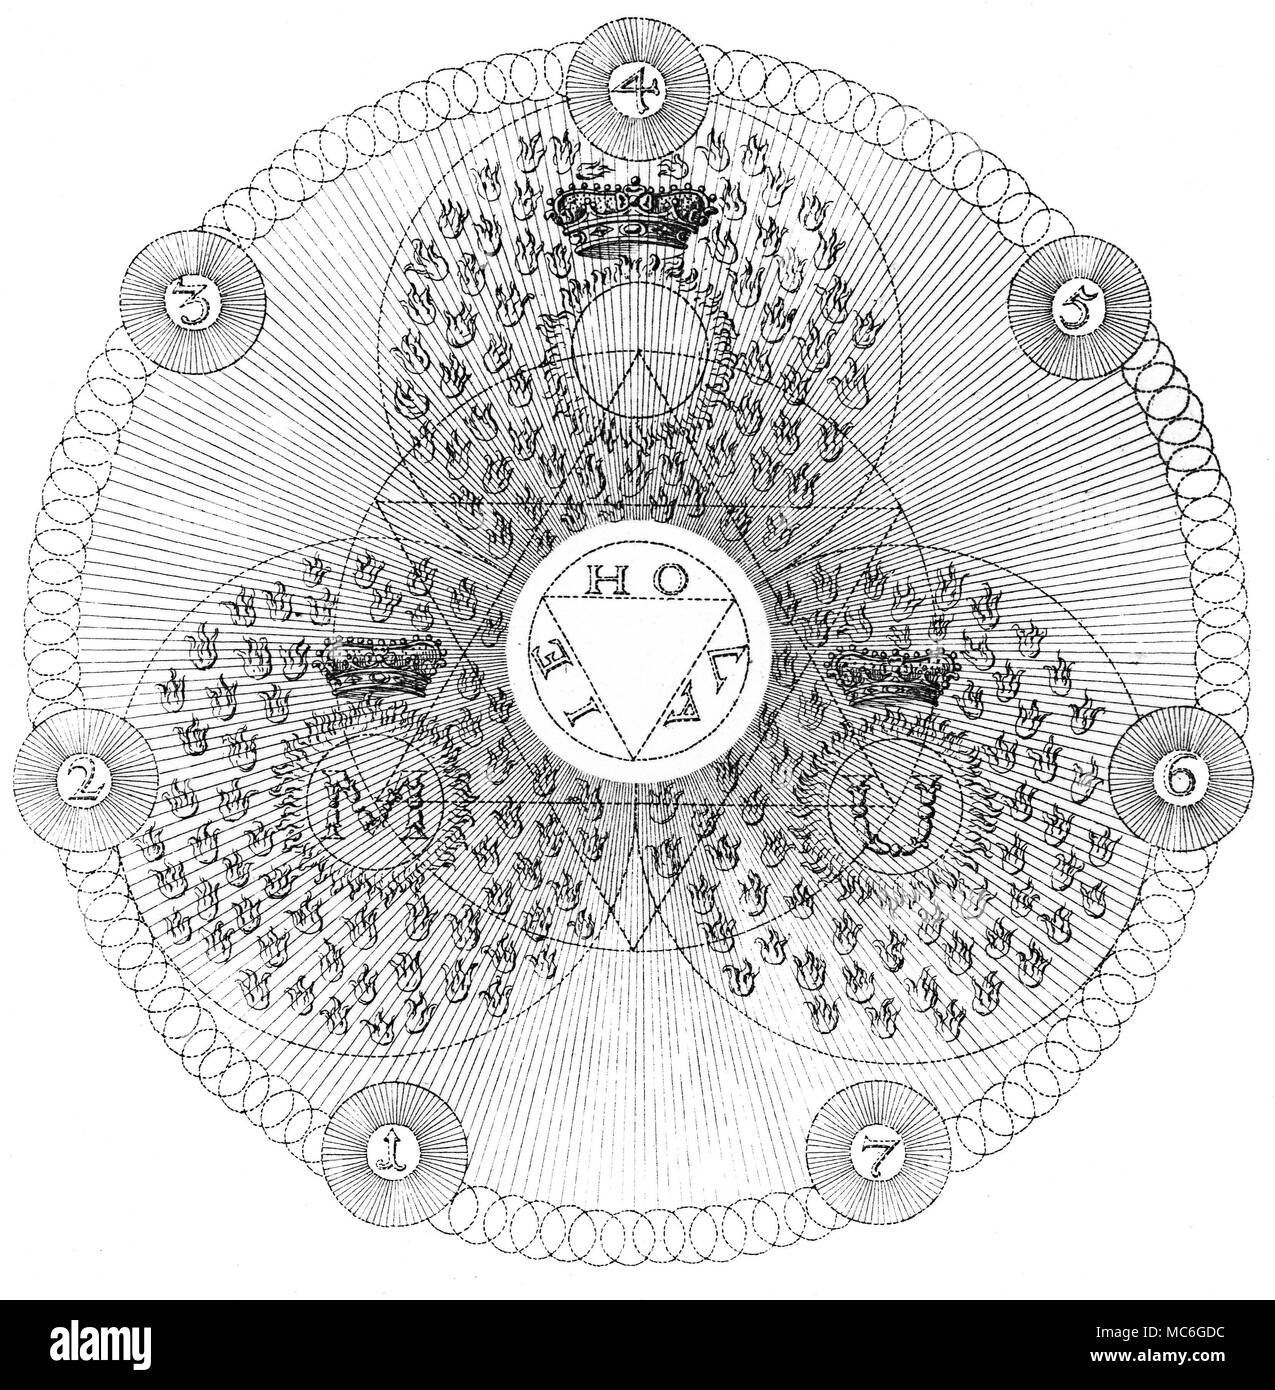 Symbole - Die okkulte Kunst - ROSENKREUZER Eine in einer Reihe von einflussreichen okkulte Gravuren von William, in der Erklärung der Grundsätze der arkanen Gedanken der Rosenkreuzer, Jakob Böhme, aus den Werken von Jakob Behmen, die Teutonischen Theosopher, Vol 1, 1764. Platte 5 ist eine grafische Entwicklung der vorherigen Platte, in der die äußeren Kreis (selbst aus einer Vielzahl von kleineren Kreise) umschließt die drei Kreise, dass der Ausdruck auf der materiellen Ebene der Gottheit, IEHOVA symbolisieren. Gott, er "Alle glorreichen Flammen des Feuers" ist ewig das Auffüllen des erstellt, Boehme ruft", Et Stockfoto